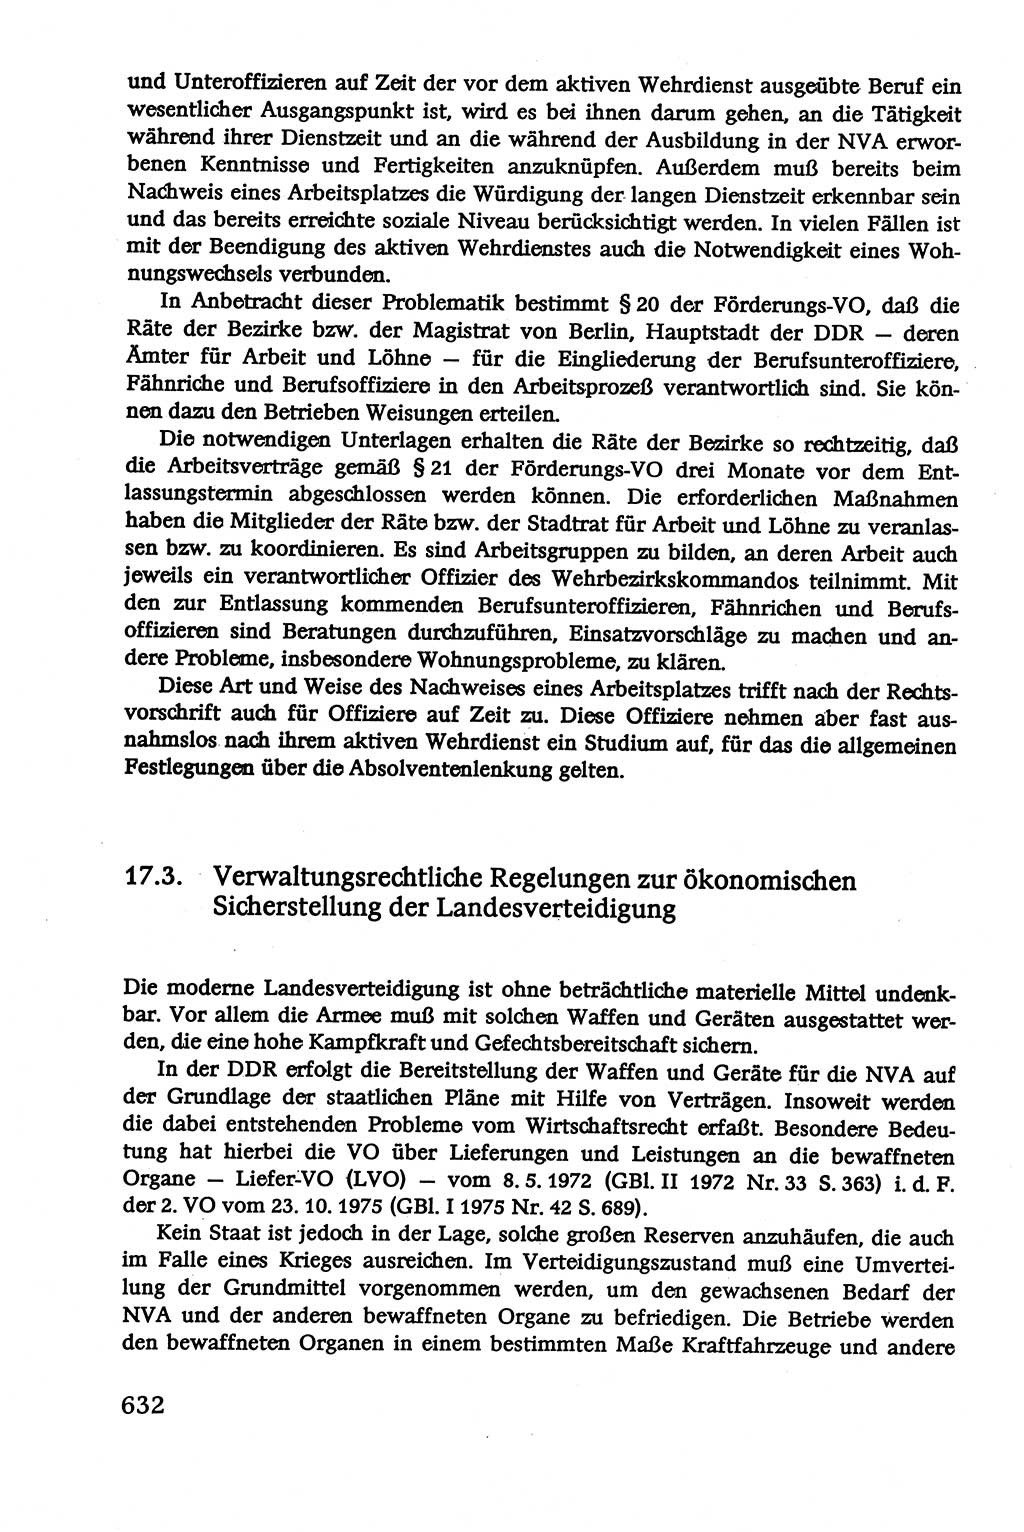 Verwaltungsrecht [Deutsche Demokratische Republik (DDR)], Lehrbuch 1979, Seite 632 (Verw.-R. DDR Lb. 1979, S. 632)